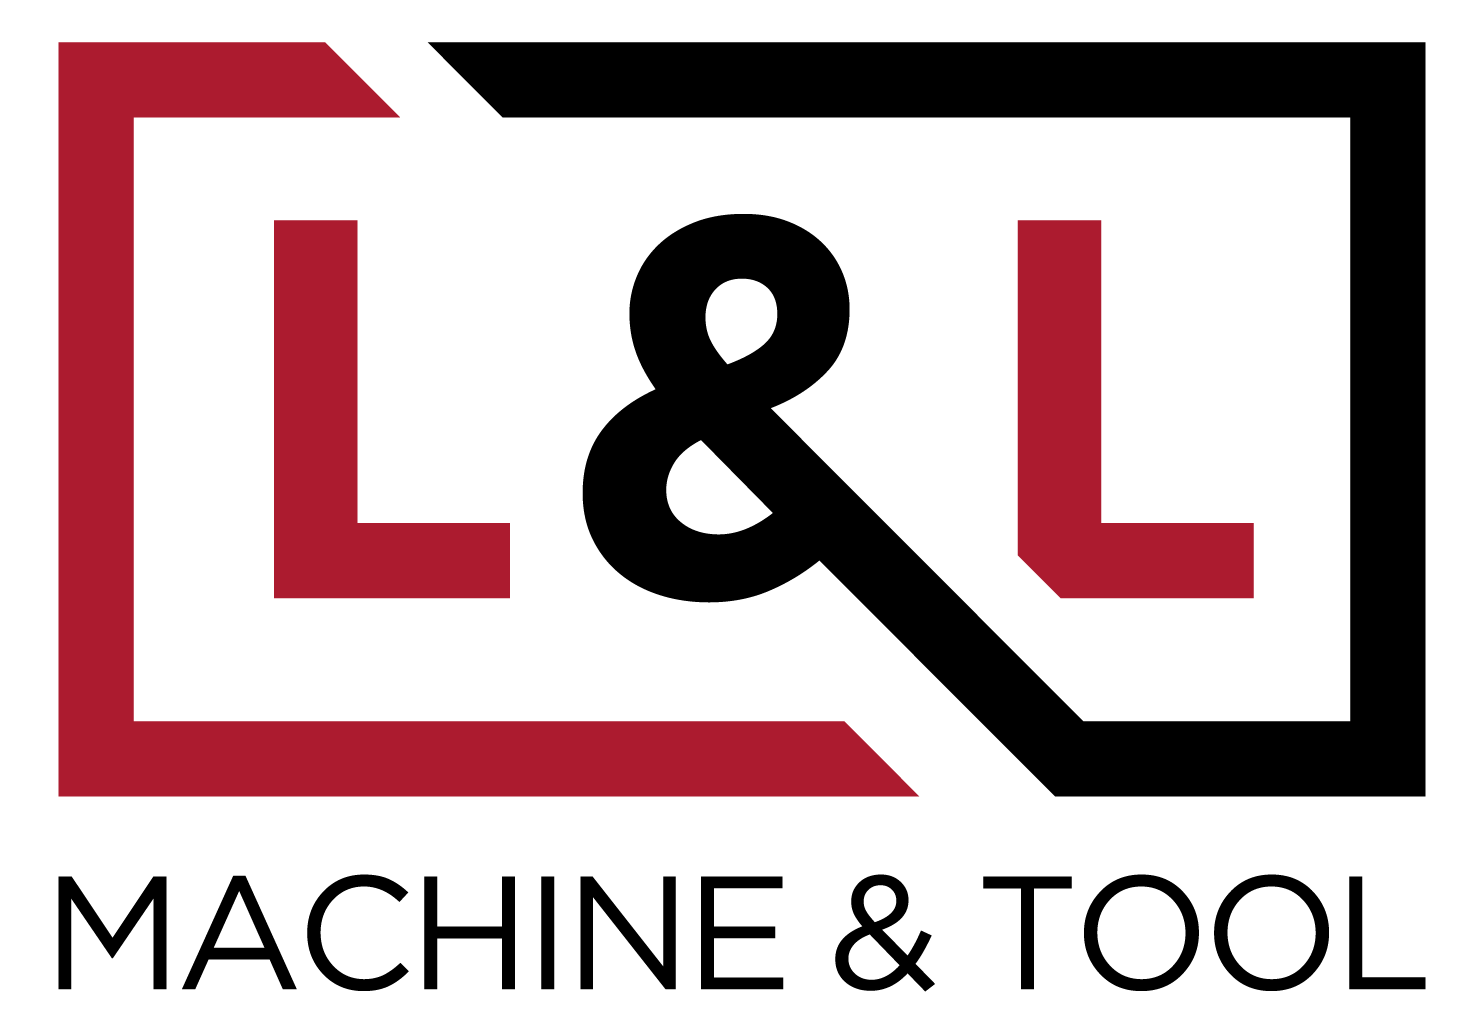 L&L Machine & Tool